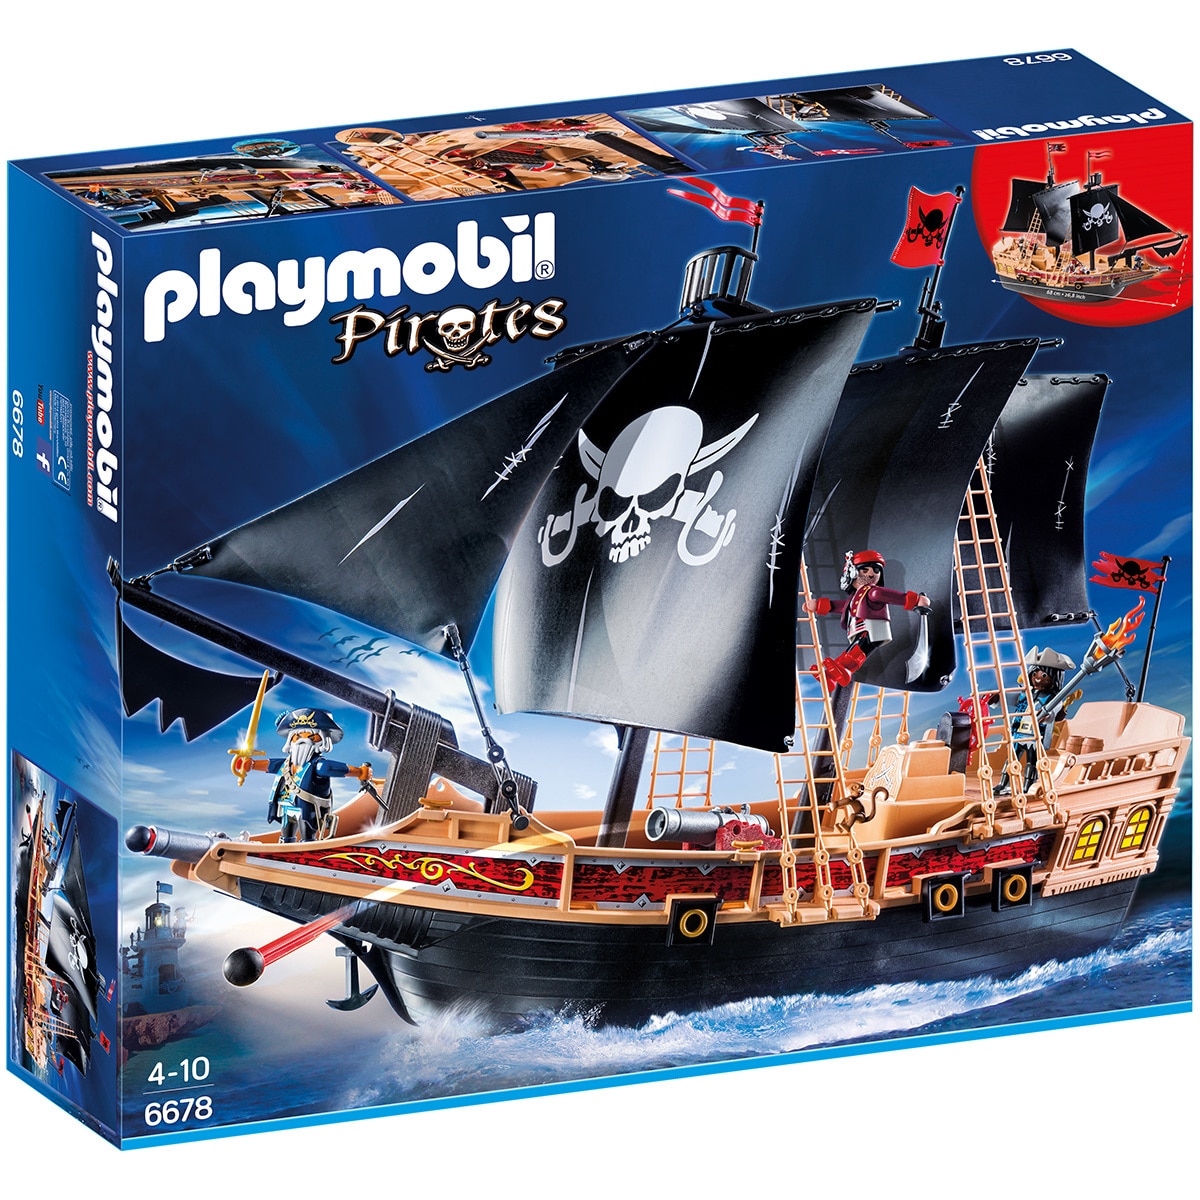 Playmobil - Pirate Raiders' Ship